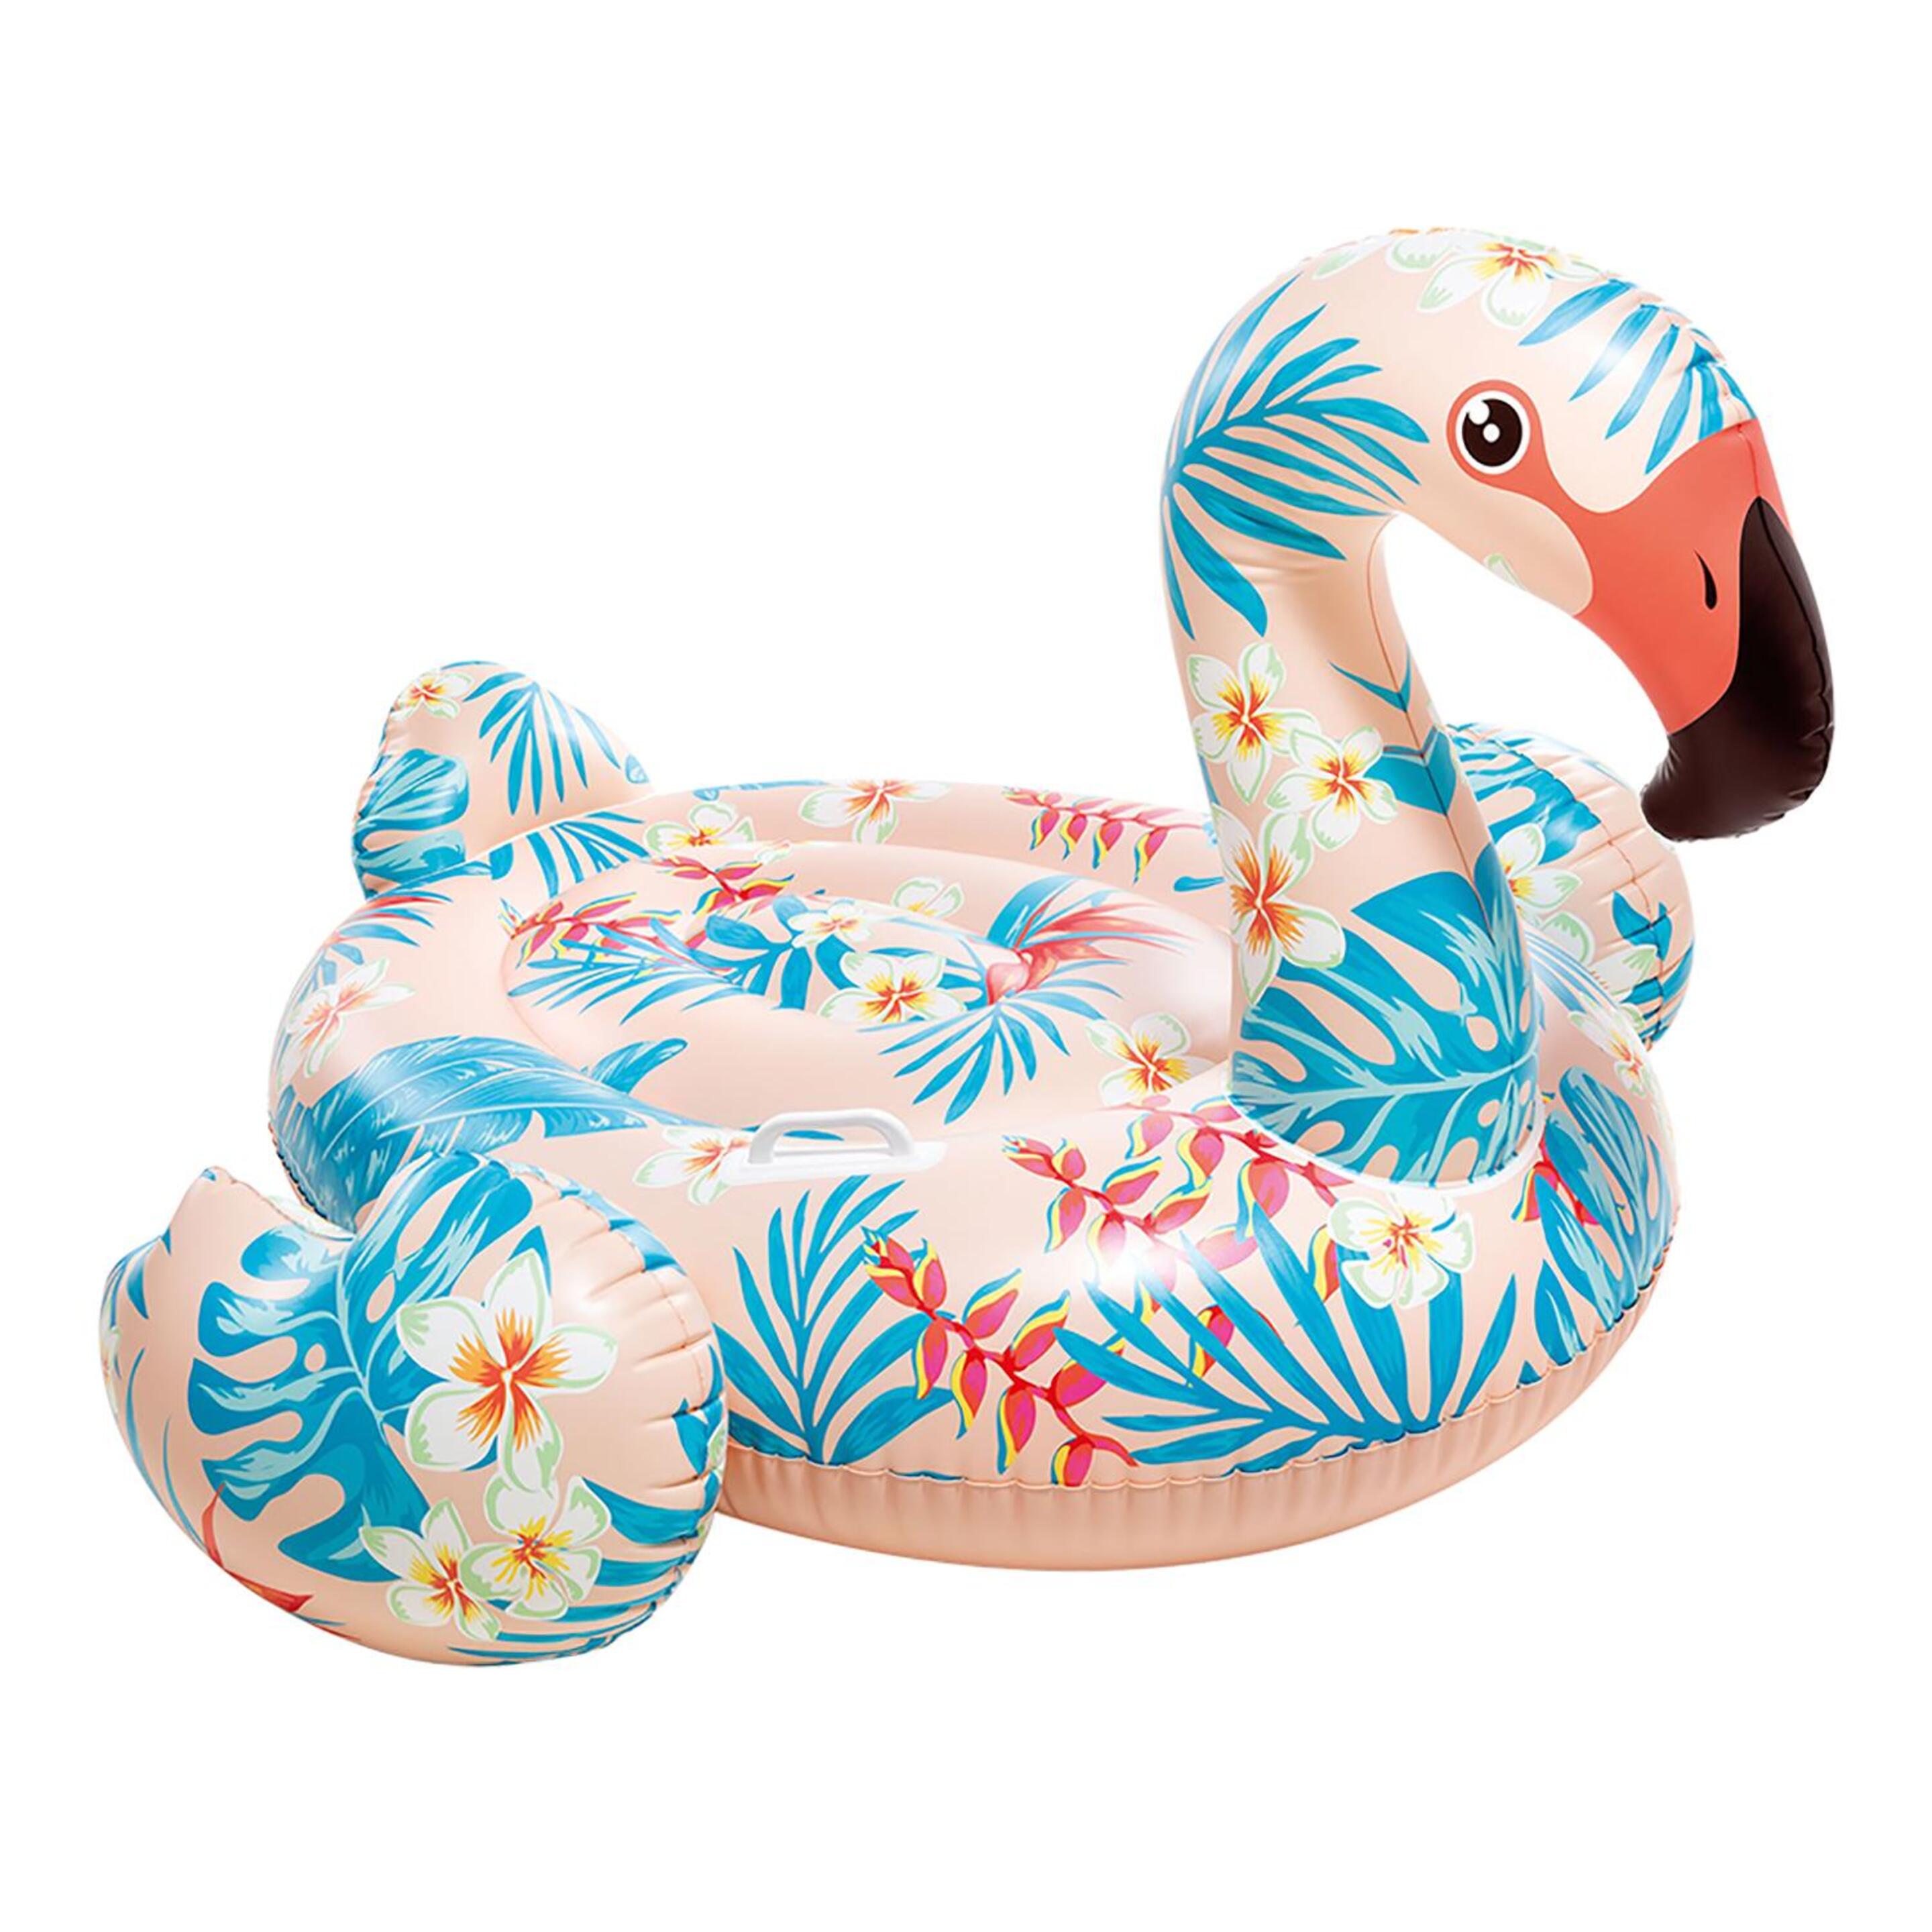 Flamingo Tropical Insuflável Intex - multicolor - 